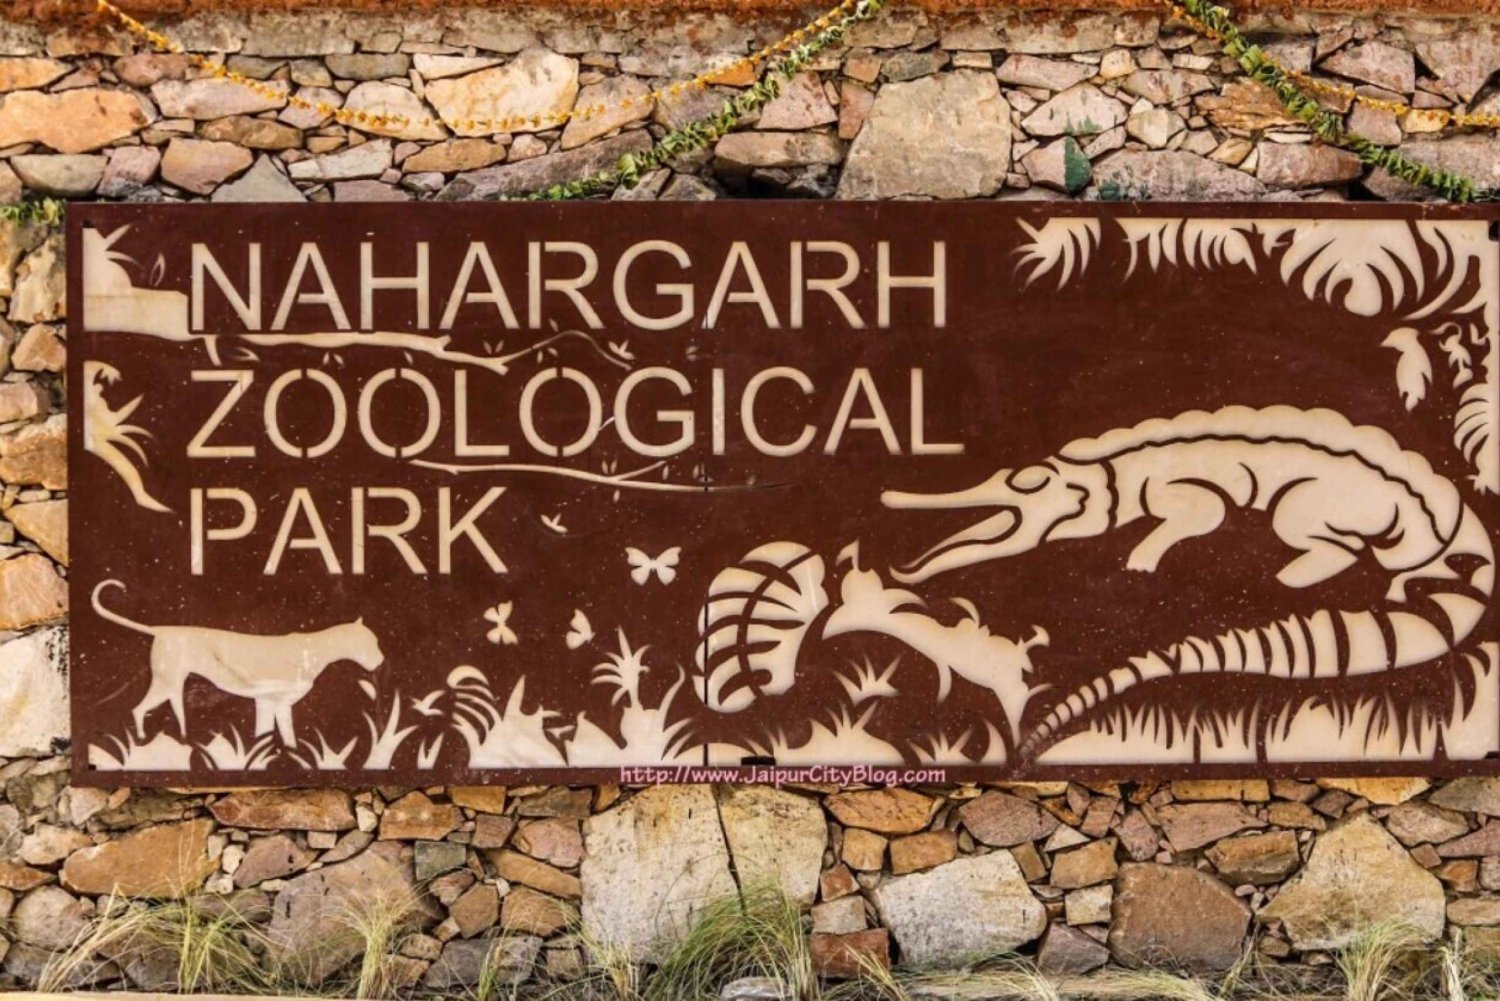 Omiń kolejkę: wycieczka do parku biologicznego Nahargarh w Jaipur